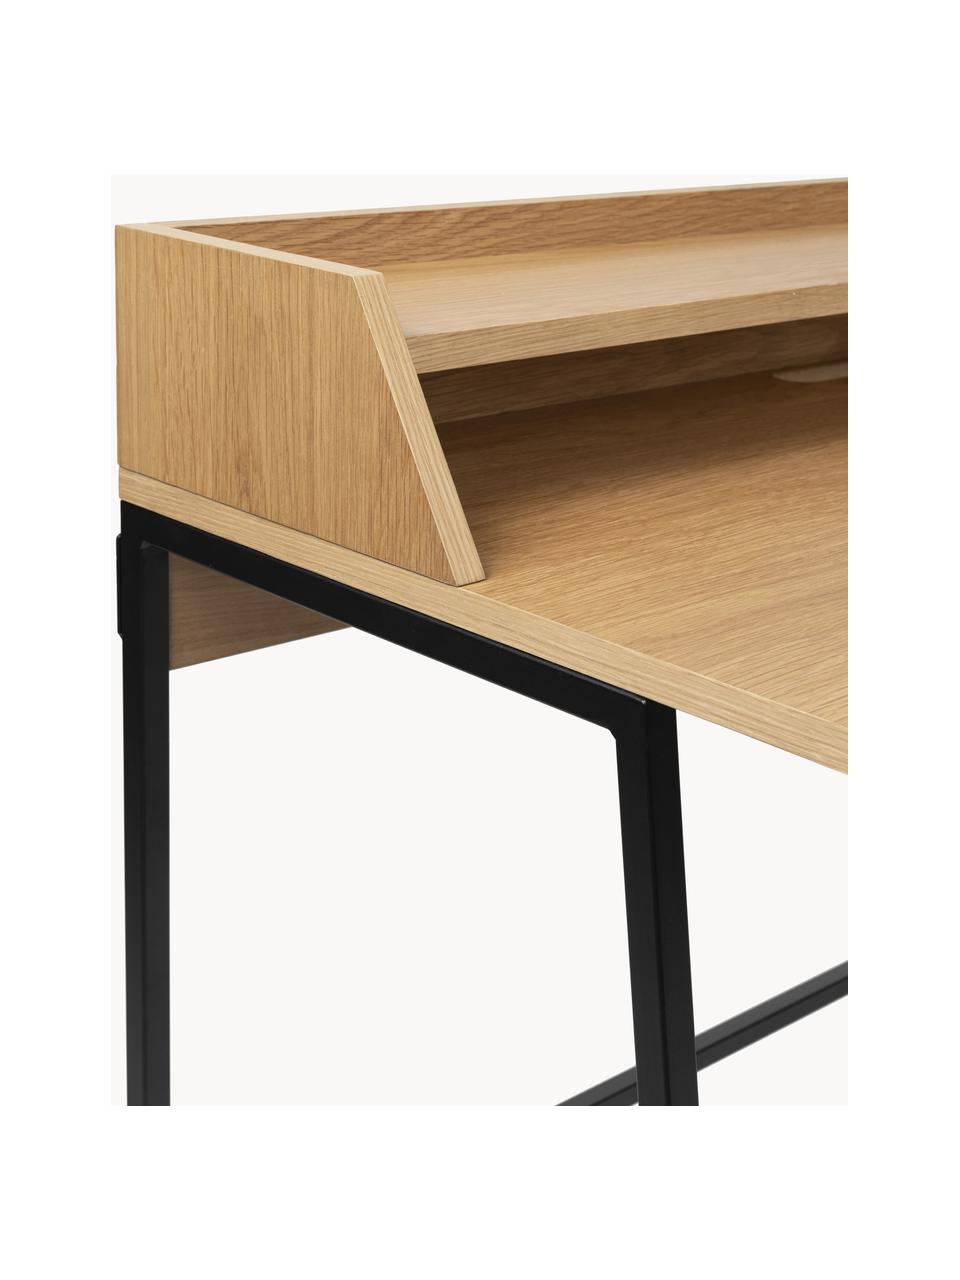 Schreibtisch Giorgio aus Holz und Metall, Gestell: Metall, pulverbeschichtet, Holz, Schwarz, B 120 x T 60 cm